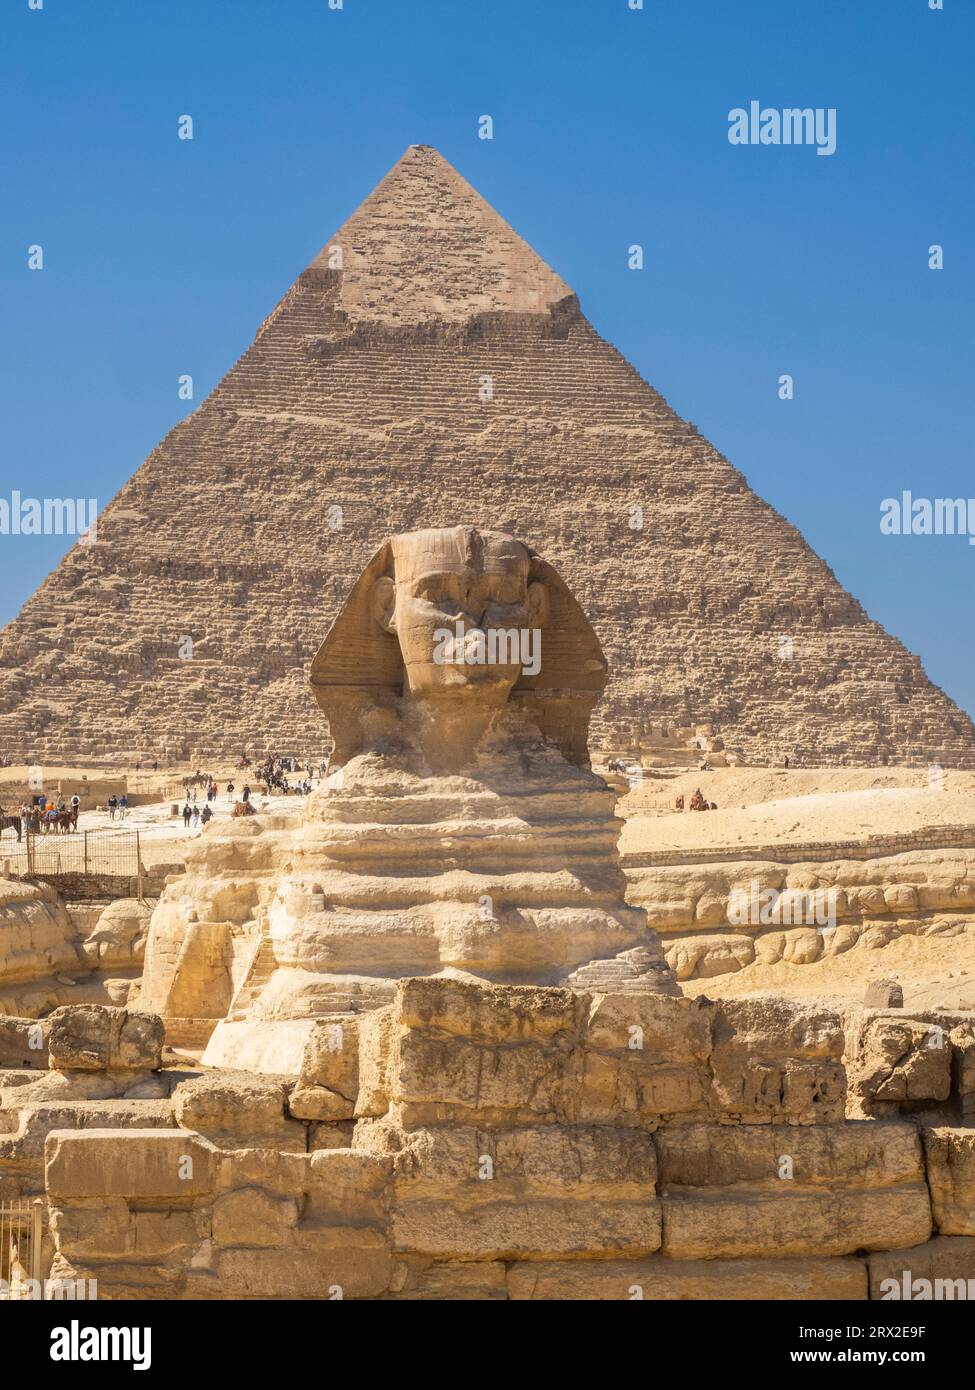 Le Grand Sphinx de Gizeh, statue calcaire d'un sphinx couché, site du patrimoine mondial de l'UNESCO, plateau de Gizeh, Cisjordanie du Nil, le Caire, Égypte Banque D'Images